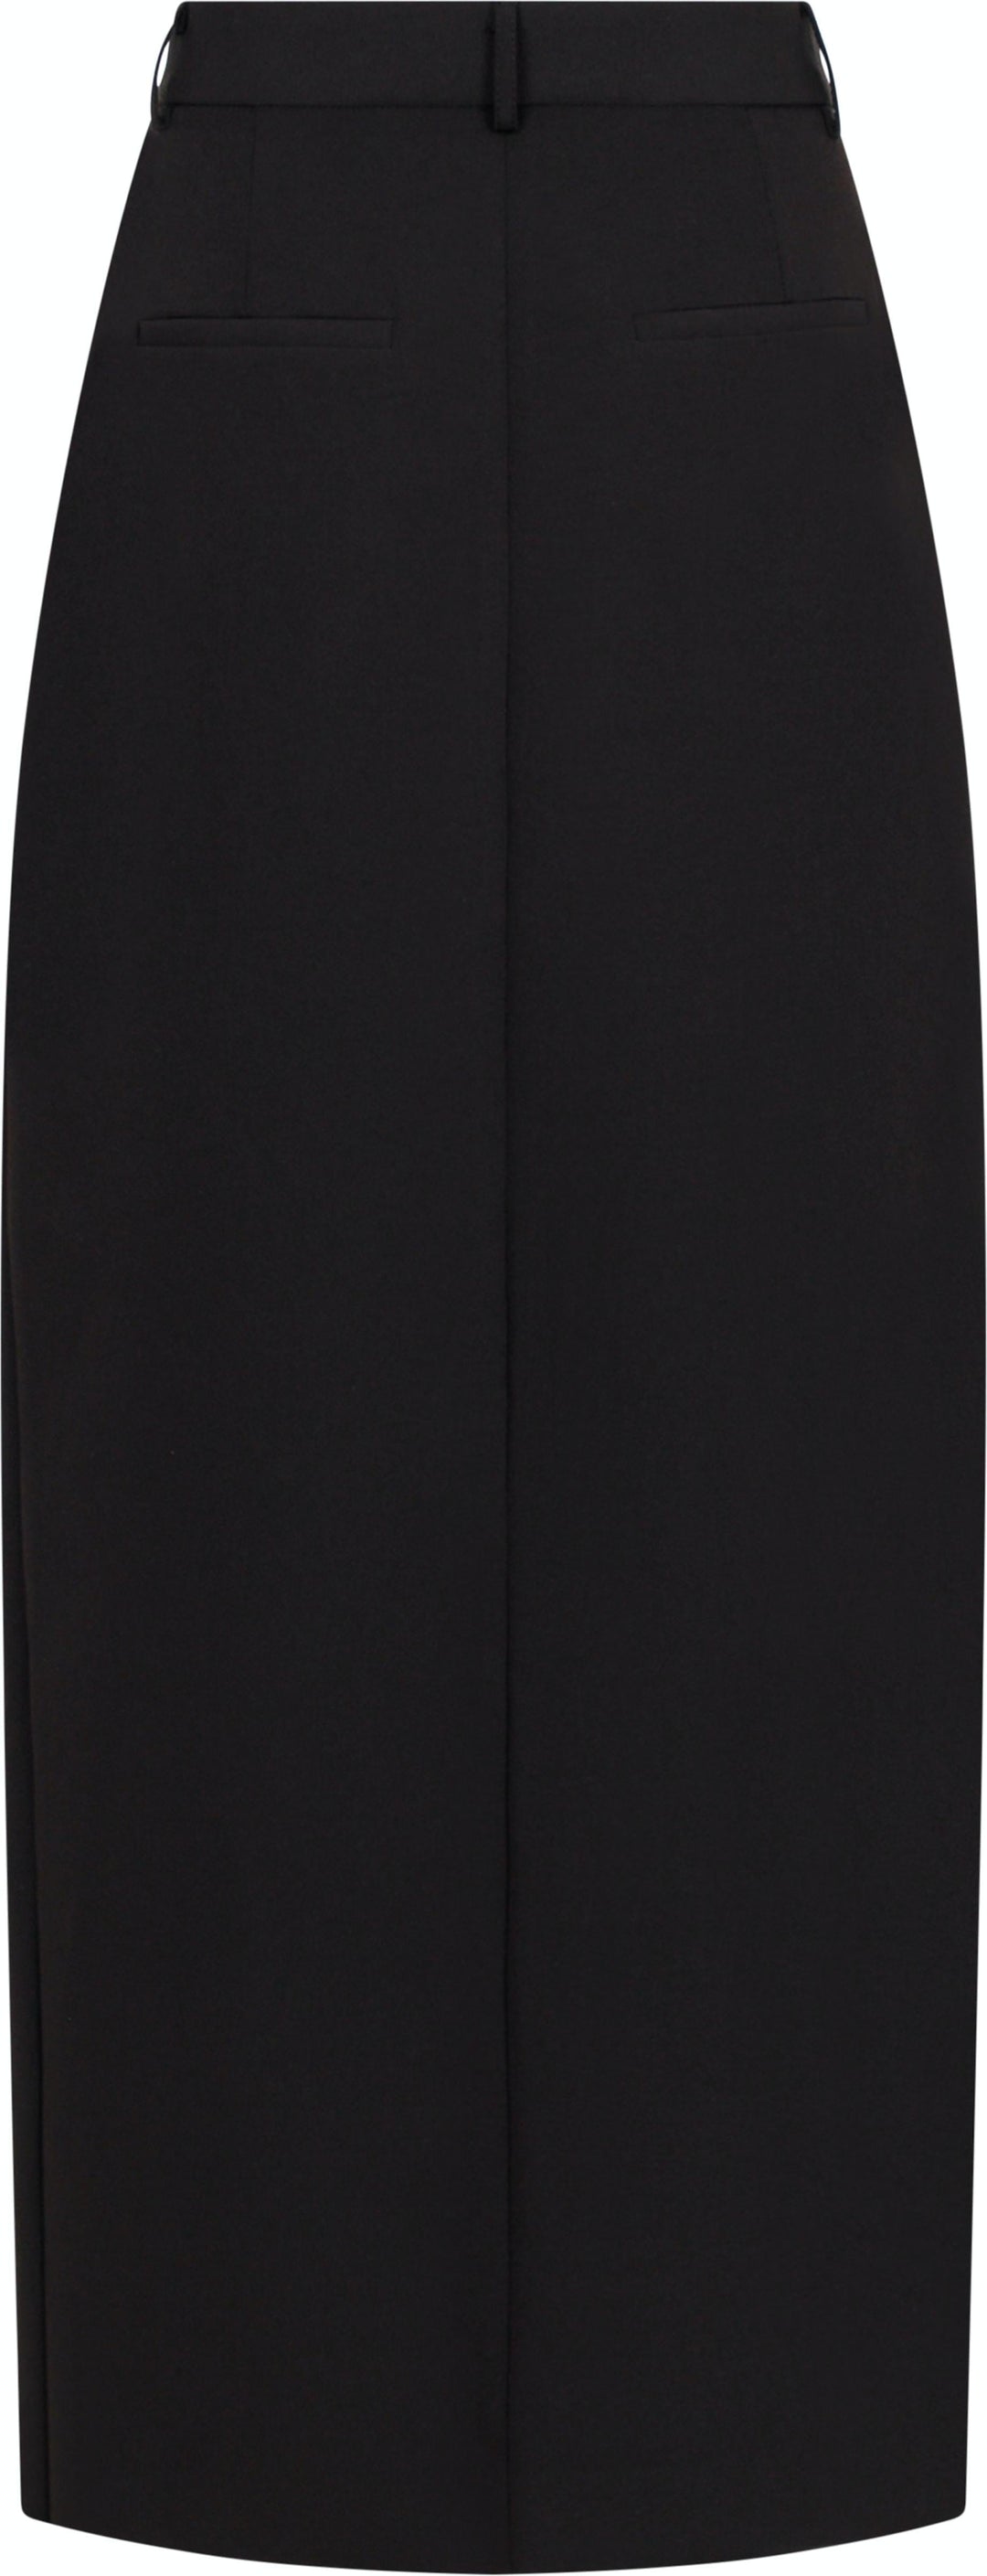 Neo Noir - Leland Suit Skirt - Black